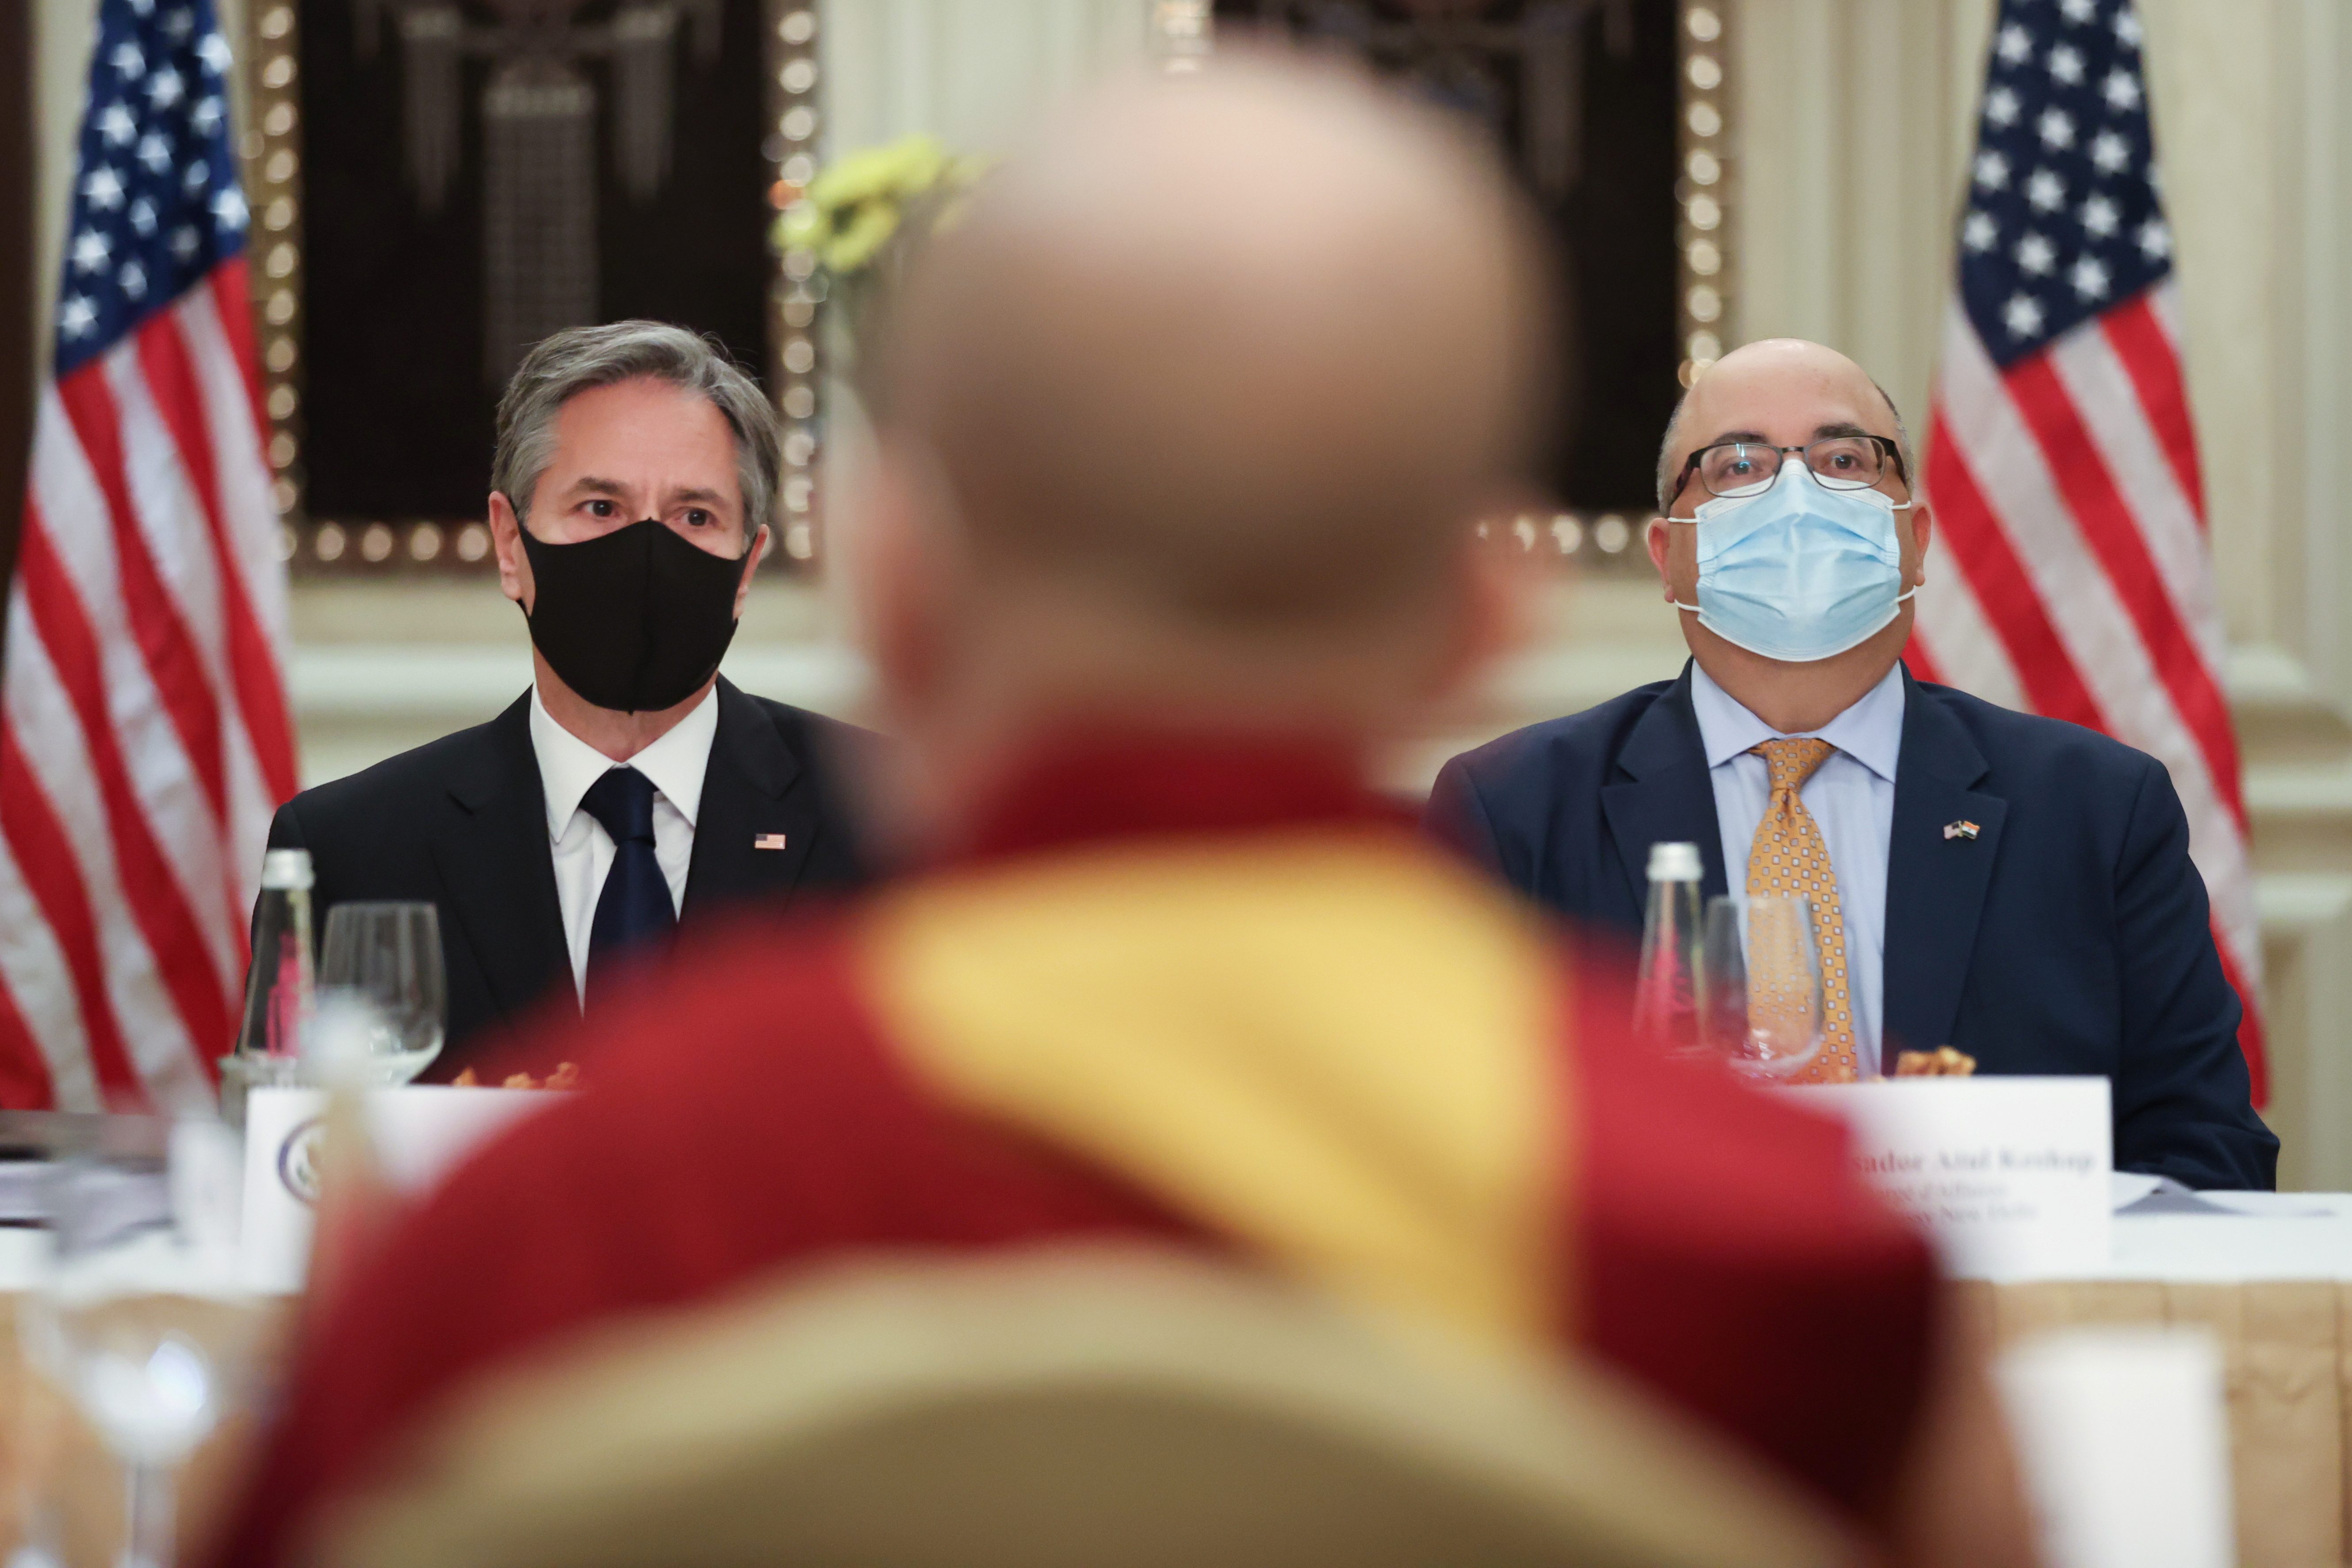 Risking China’s anger, Blinken meets representative of Dalai Lama in India